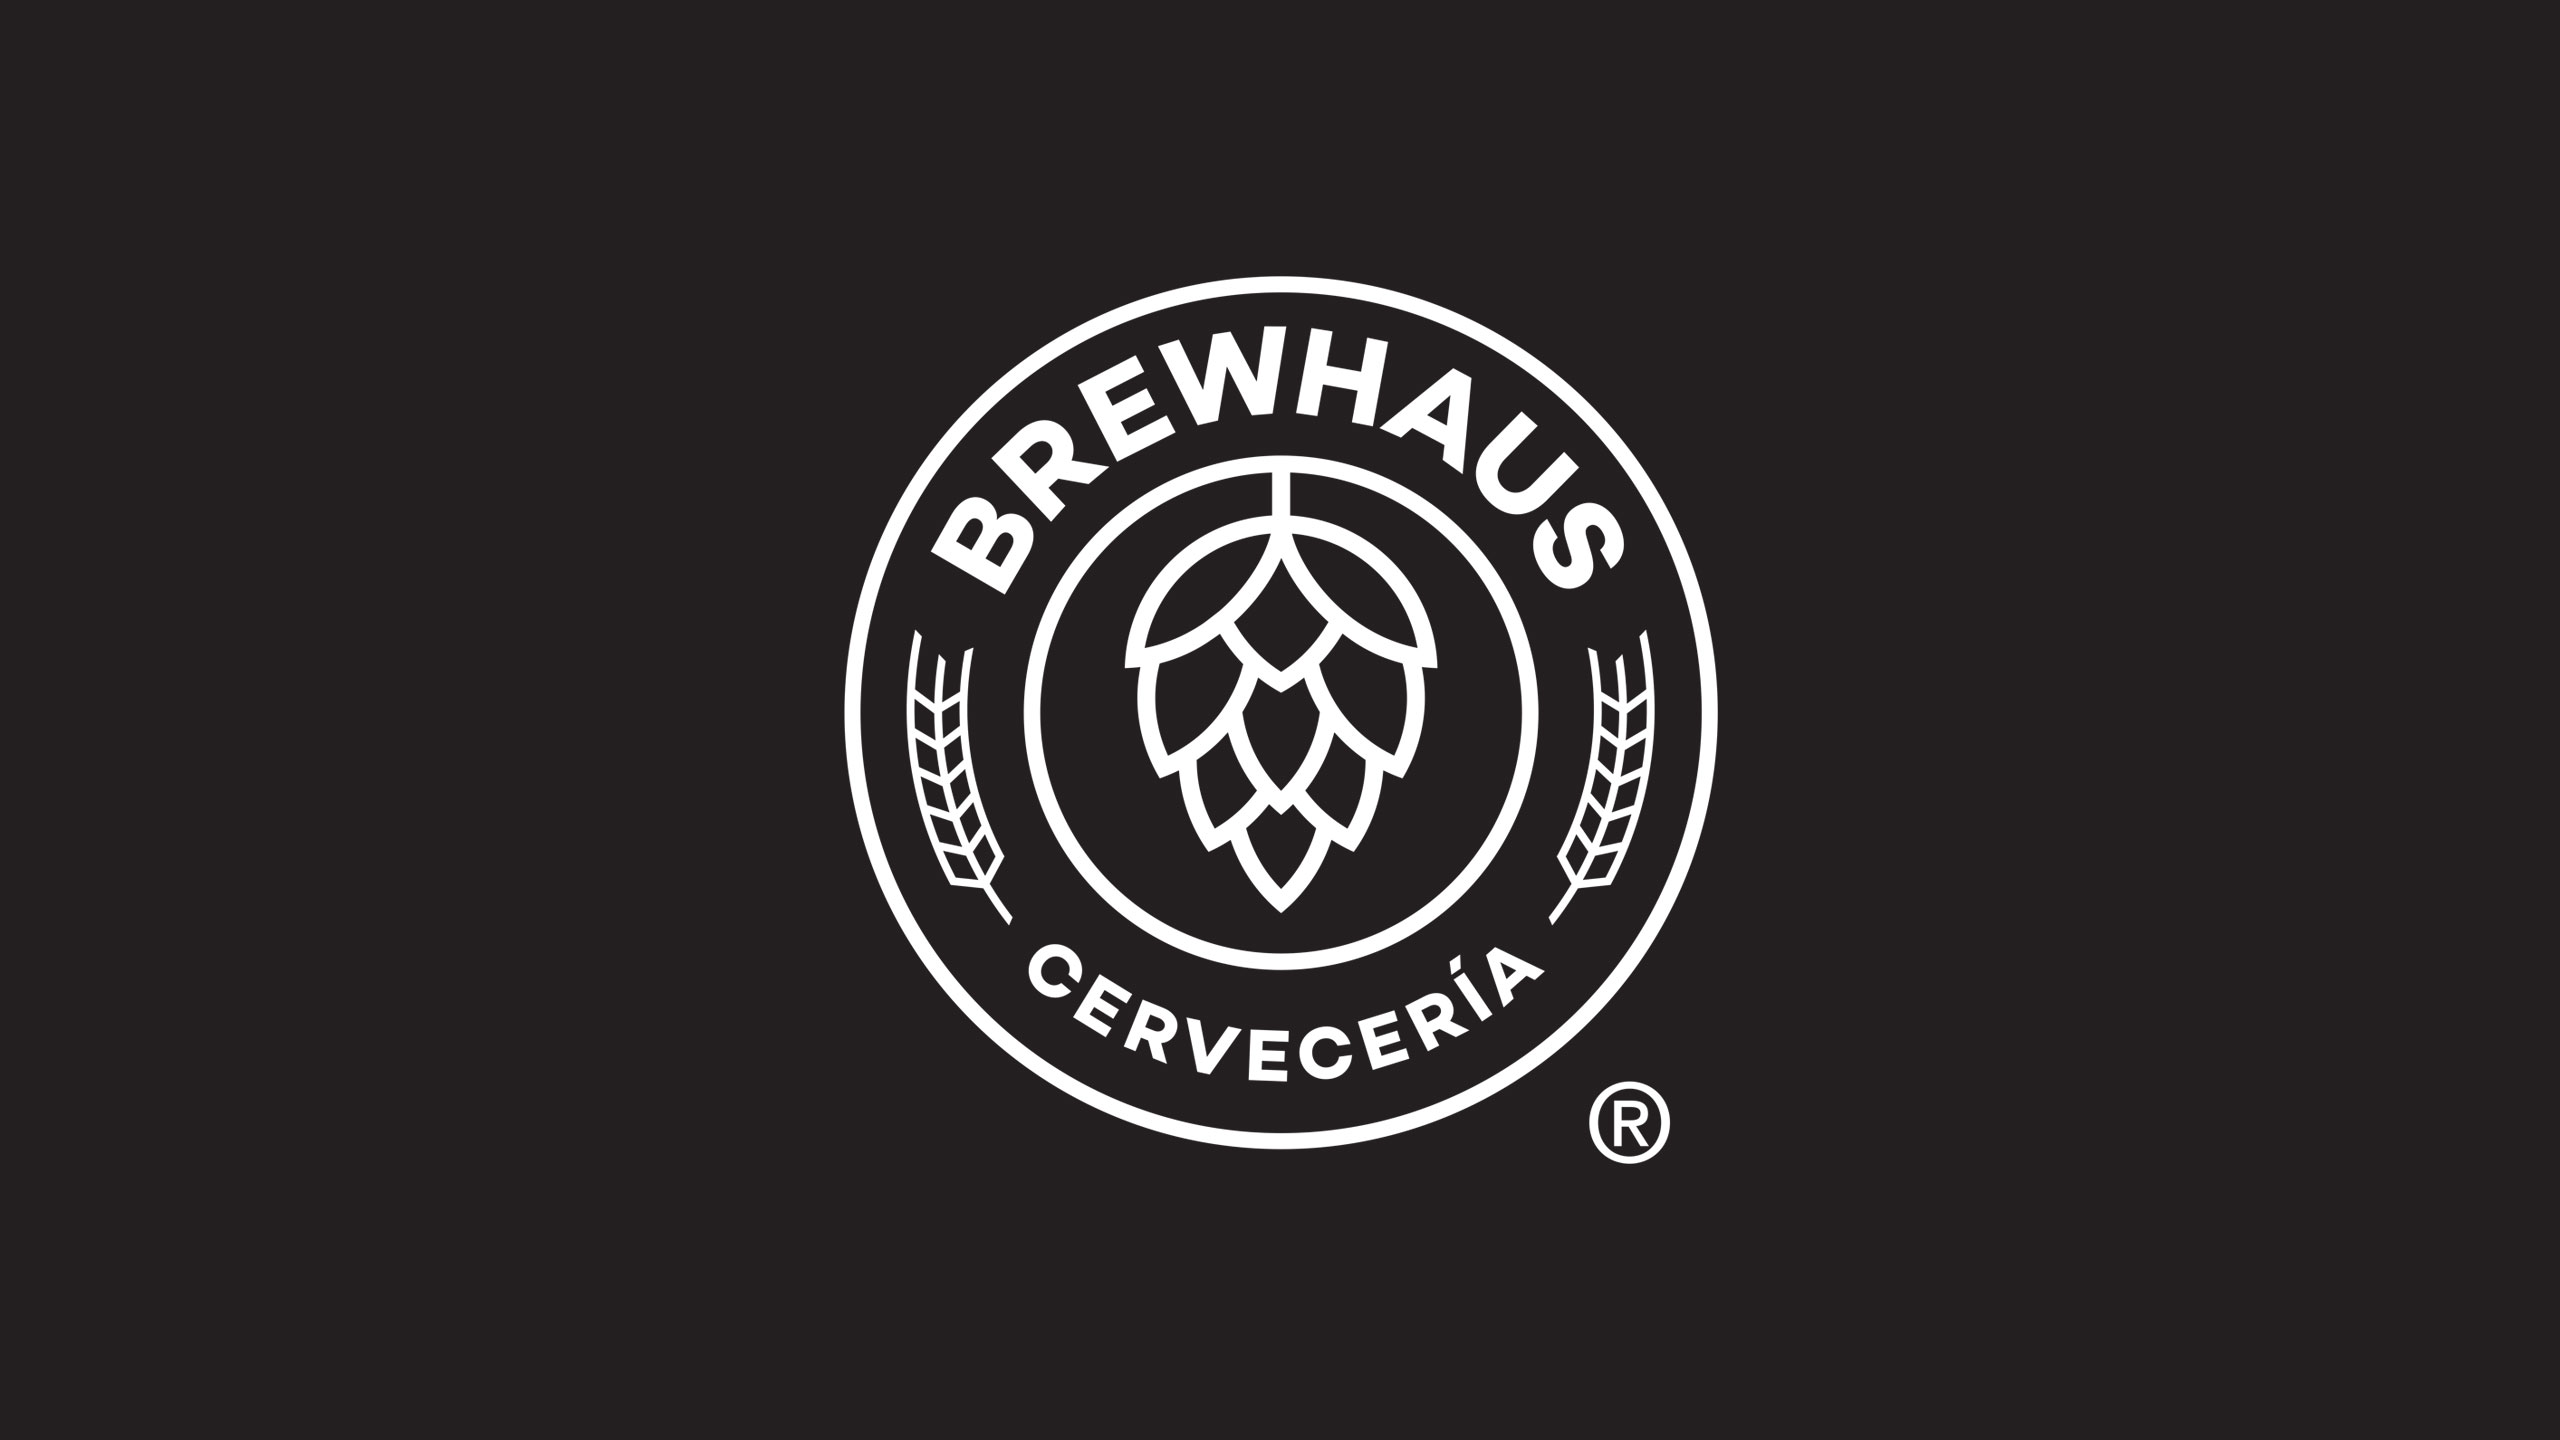 brewhaus cerveceria logo design